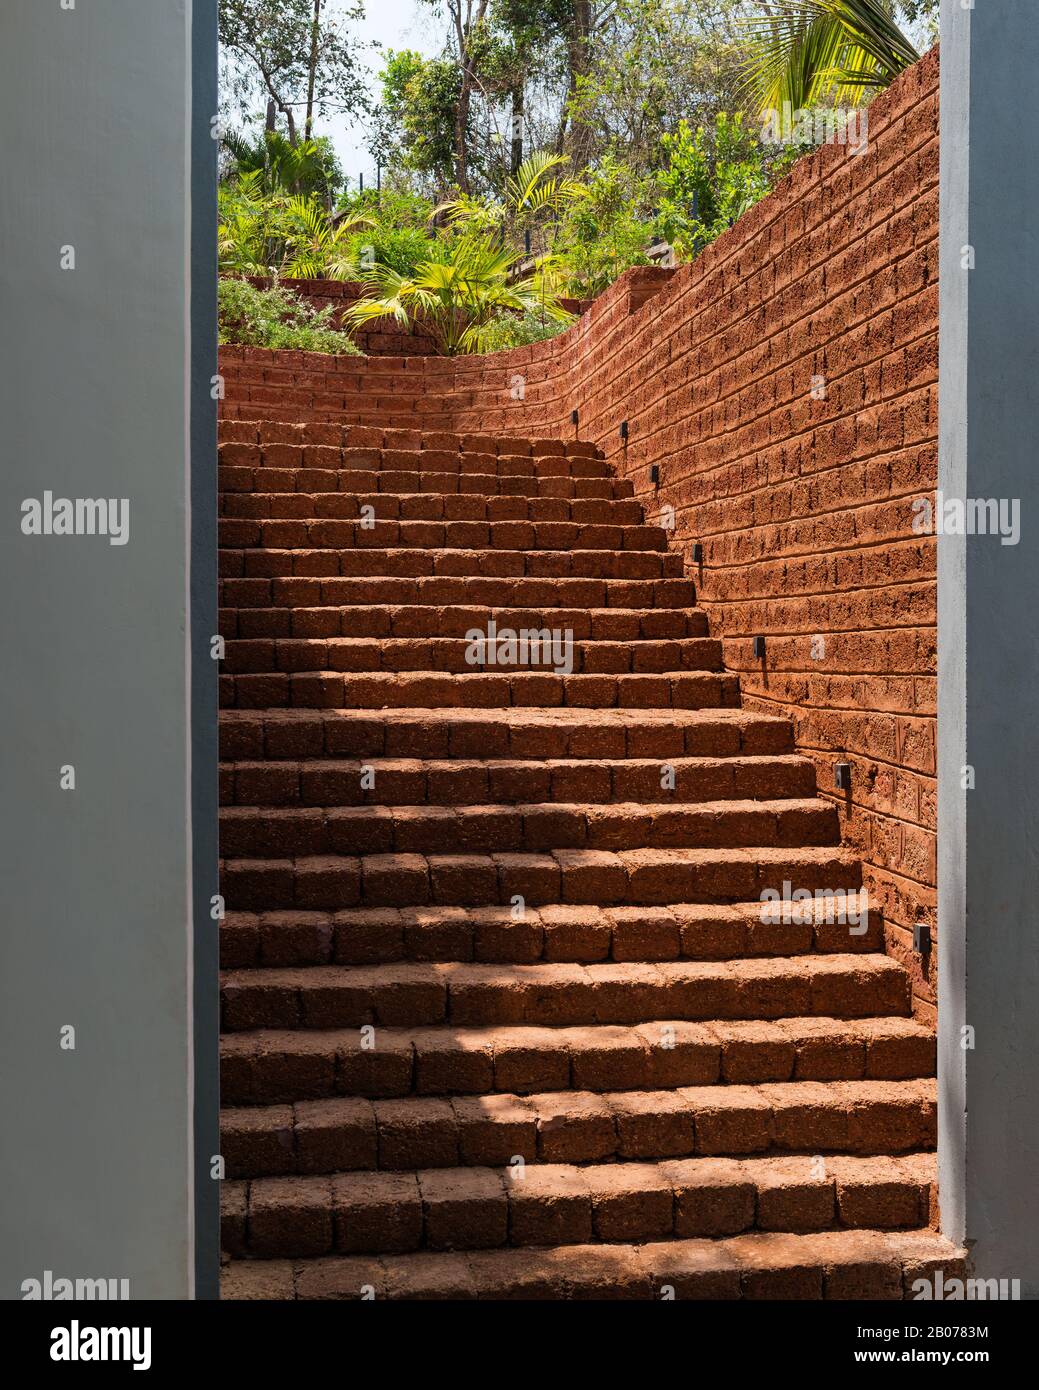 Brick staircase in garden Stock Photo